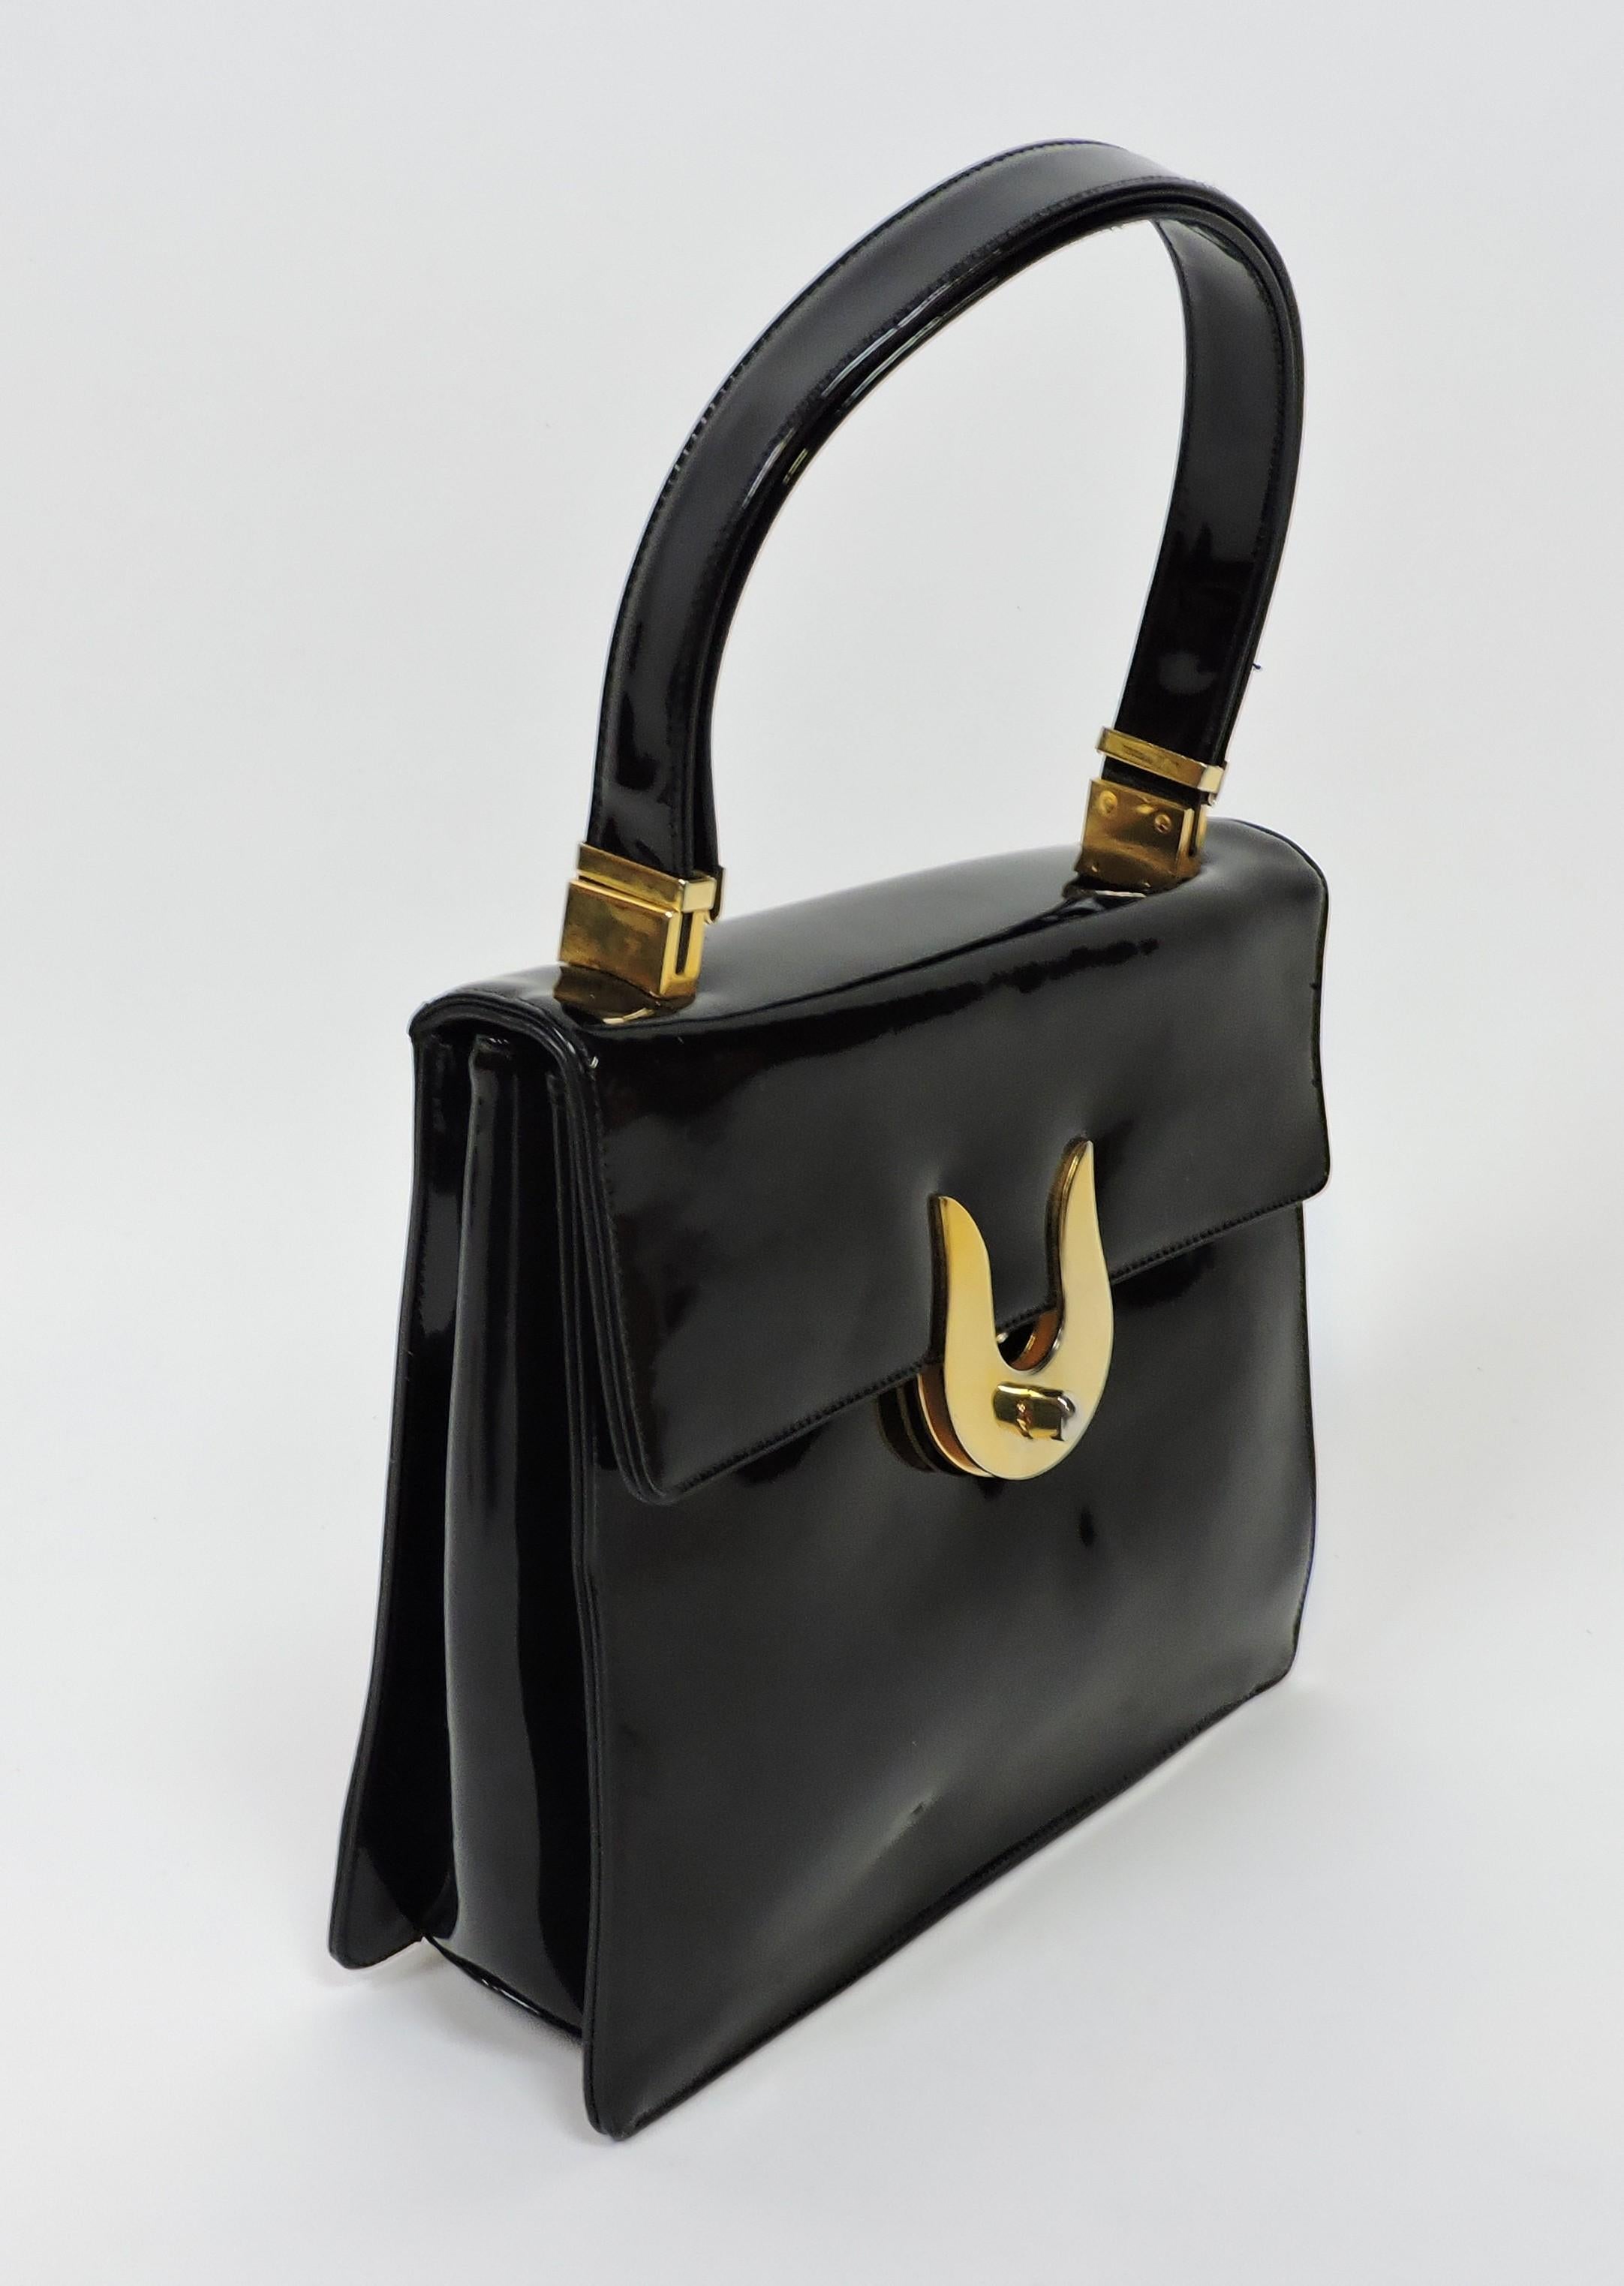 Koret Mid-Century Modern Black Patent Leather and Brass Handbag or Shoulder Bag For Sale 2